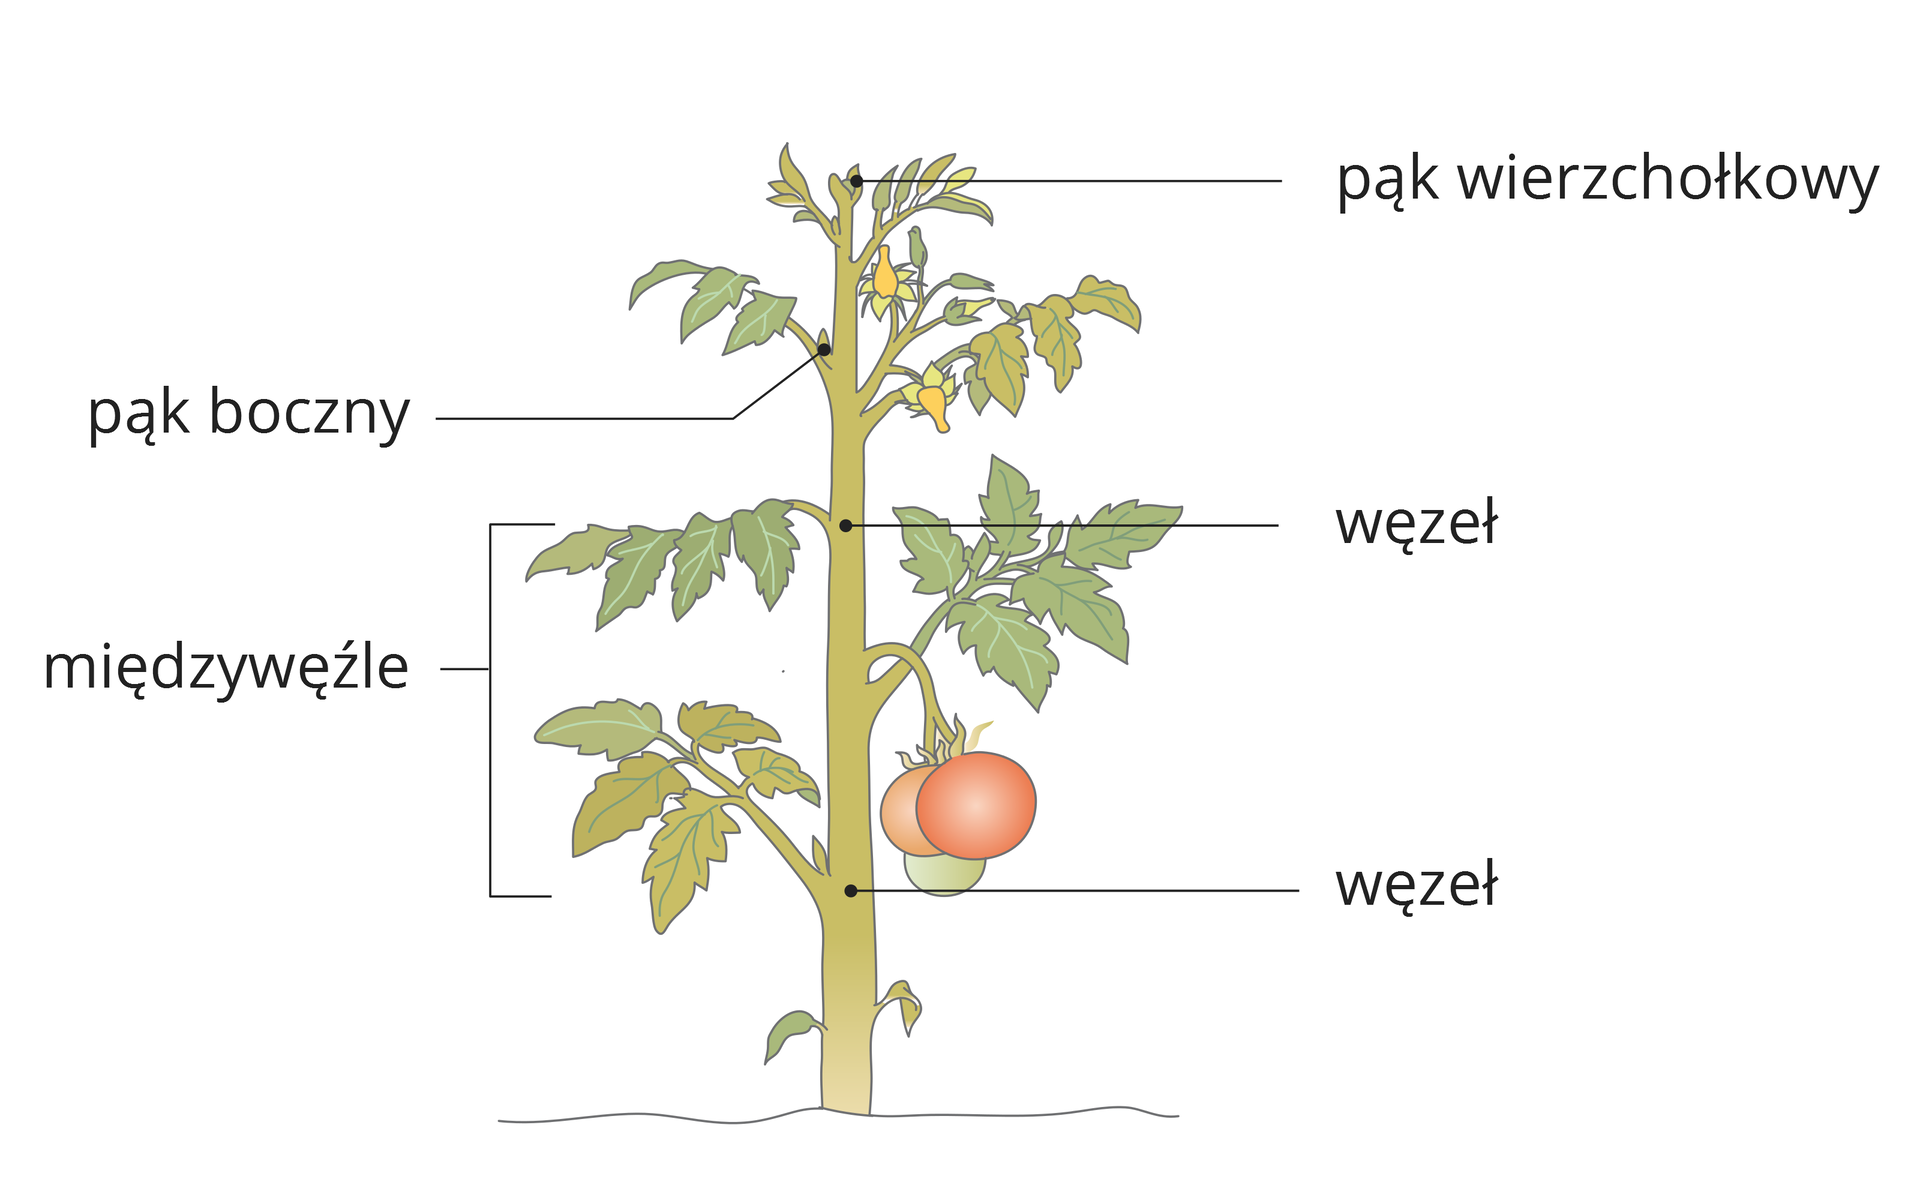 Ilustracja przedstawia pęd pomidora z liśćmi, żółtymi kwiatami i czerwonym owocem. Na łodydze zaznaczono jej części.